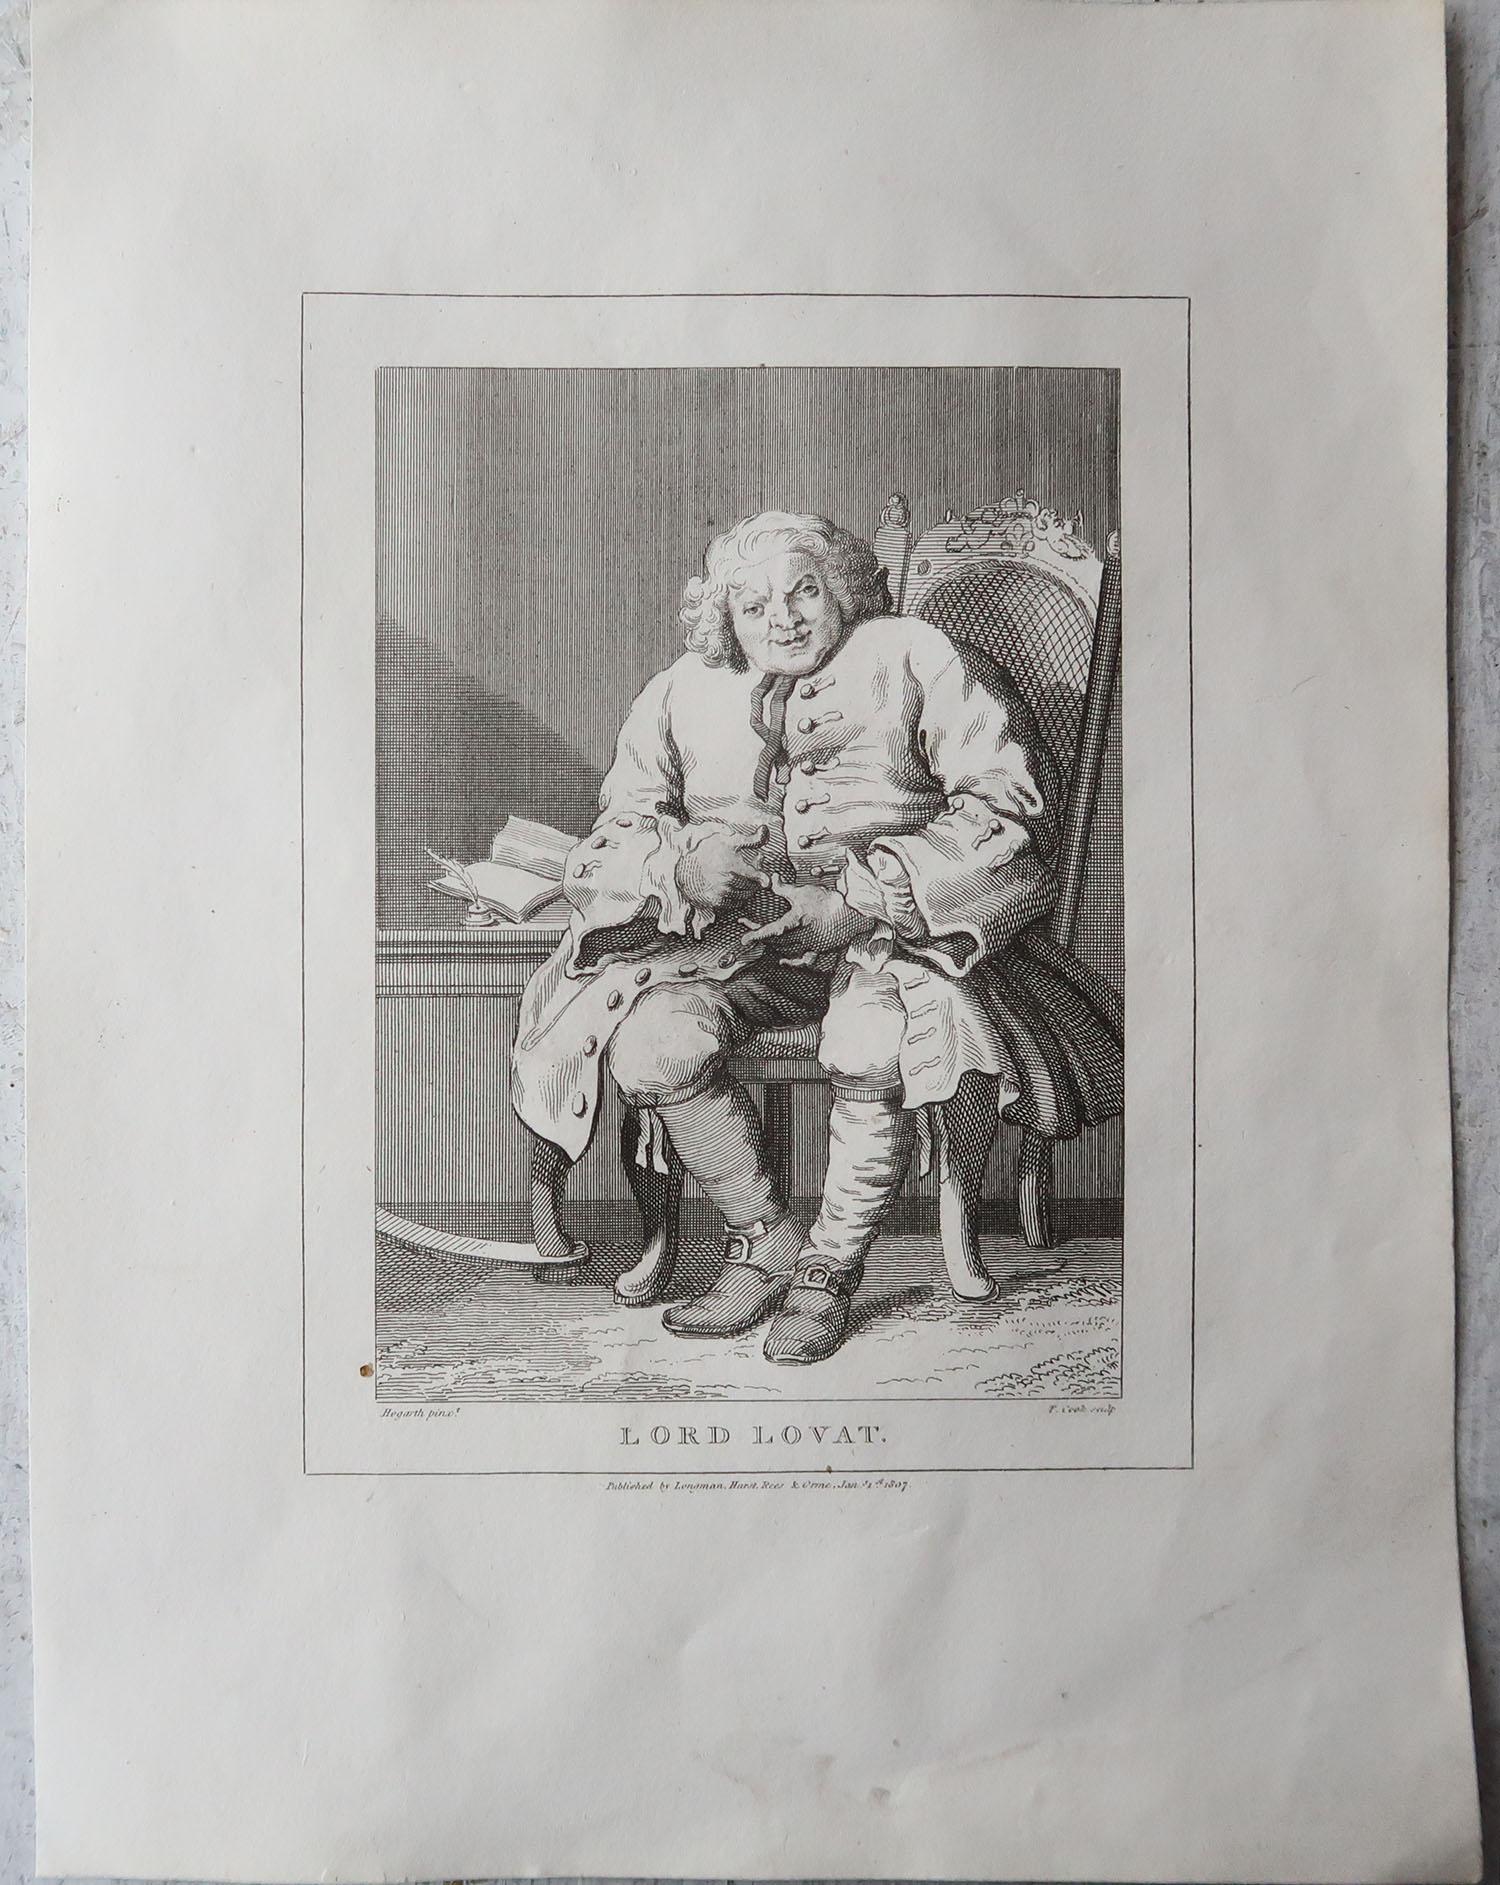 Set of 10 Original Antique Prints After Hogarth, Political, Satirical For Sale 1